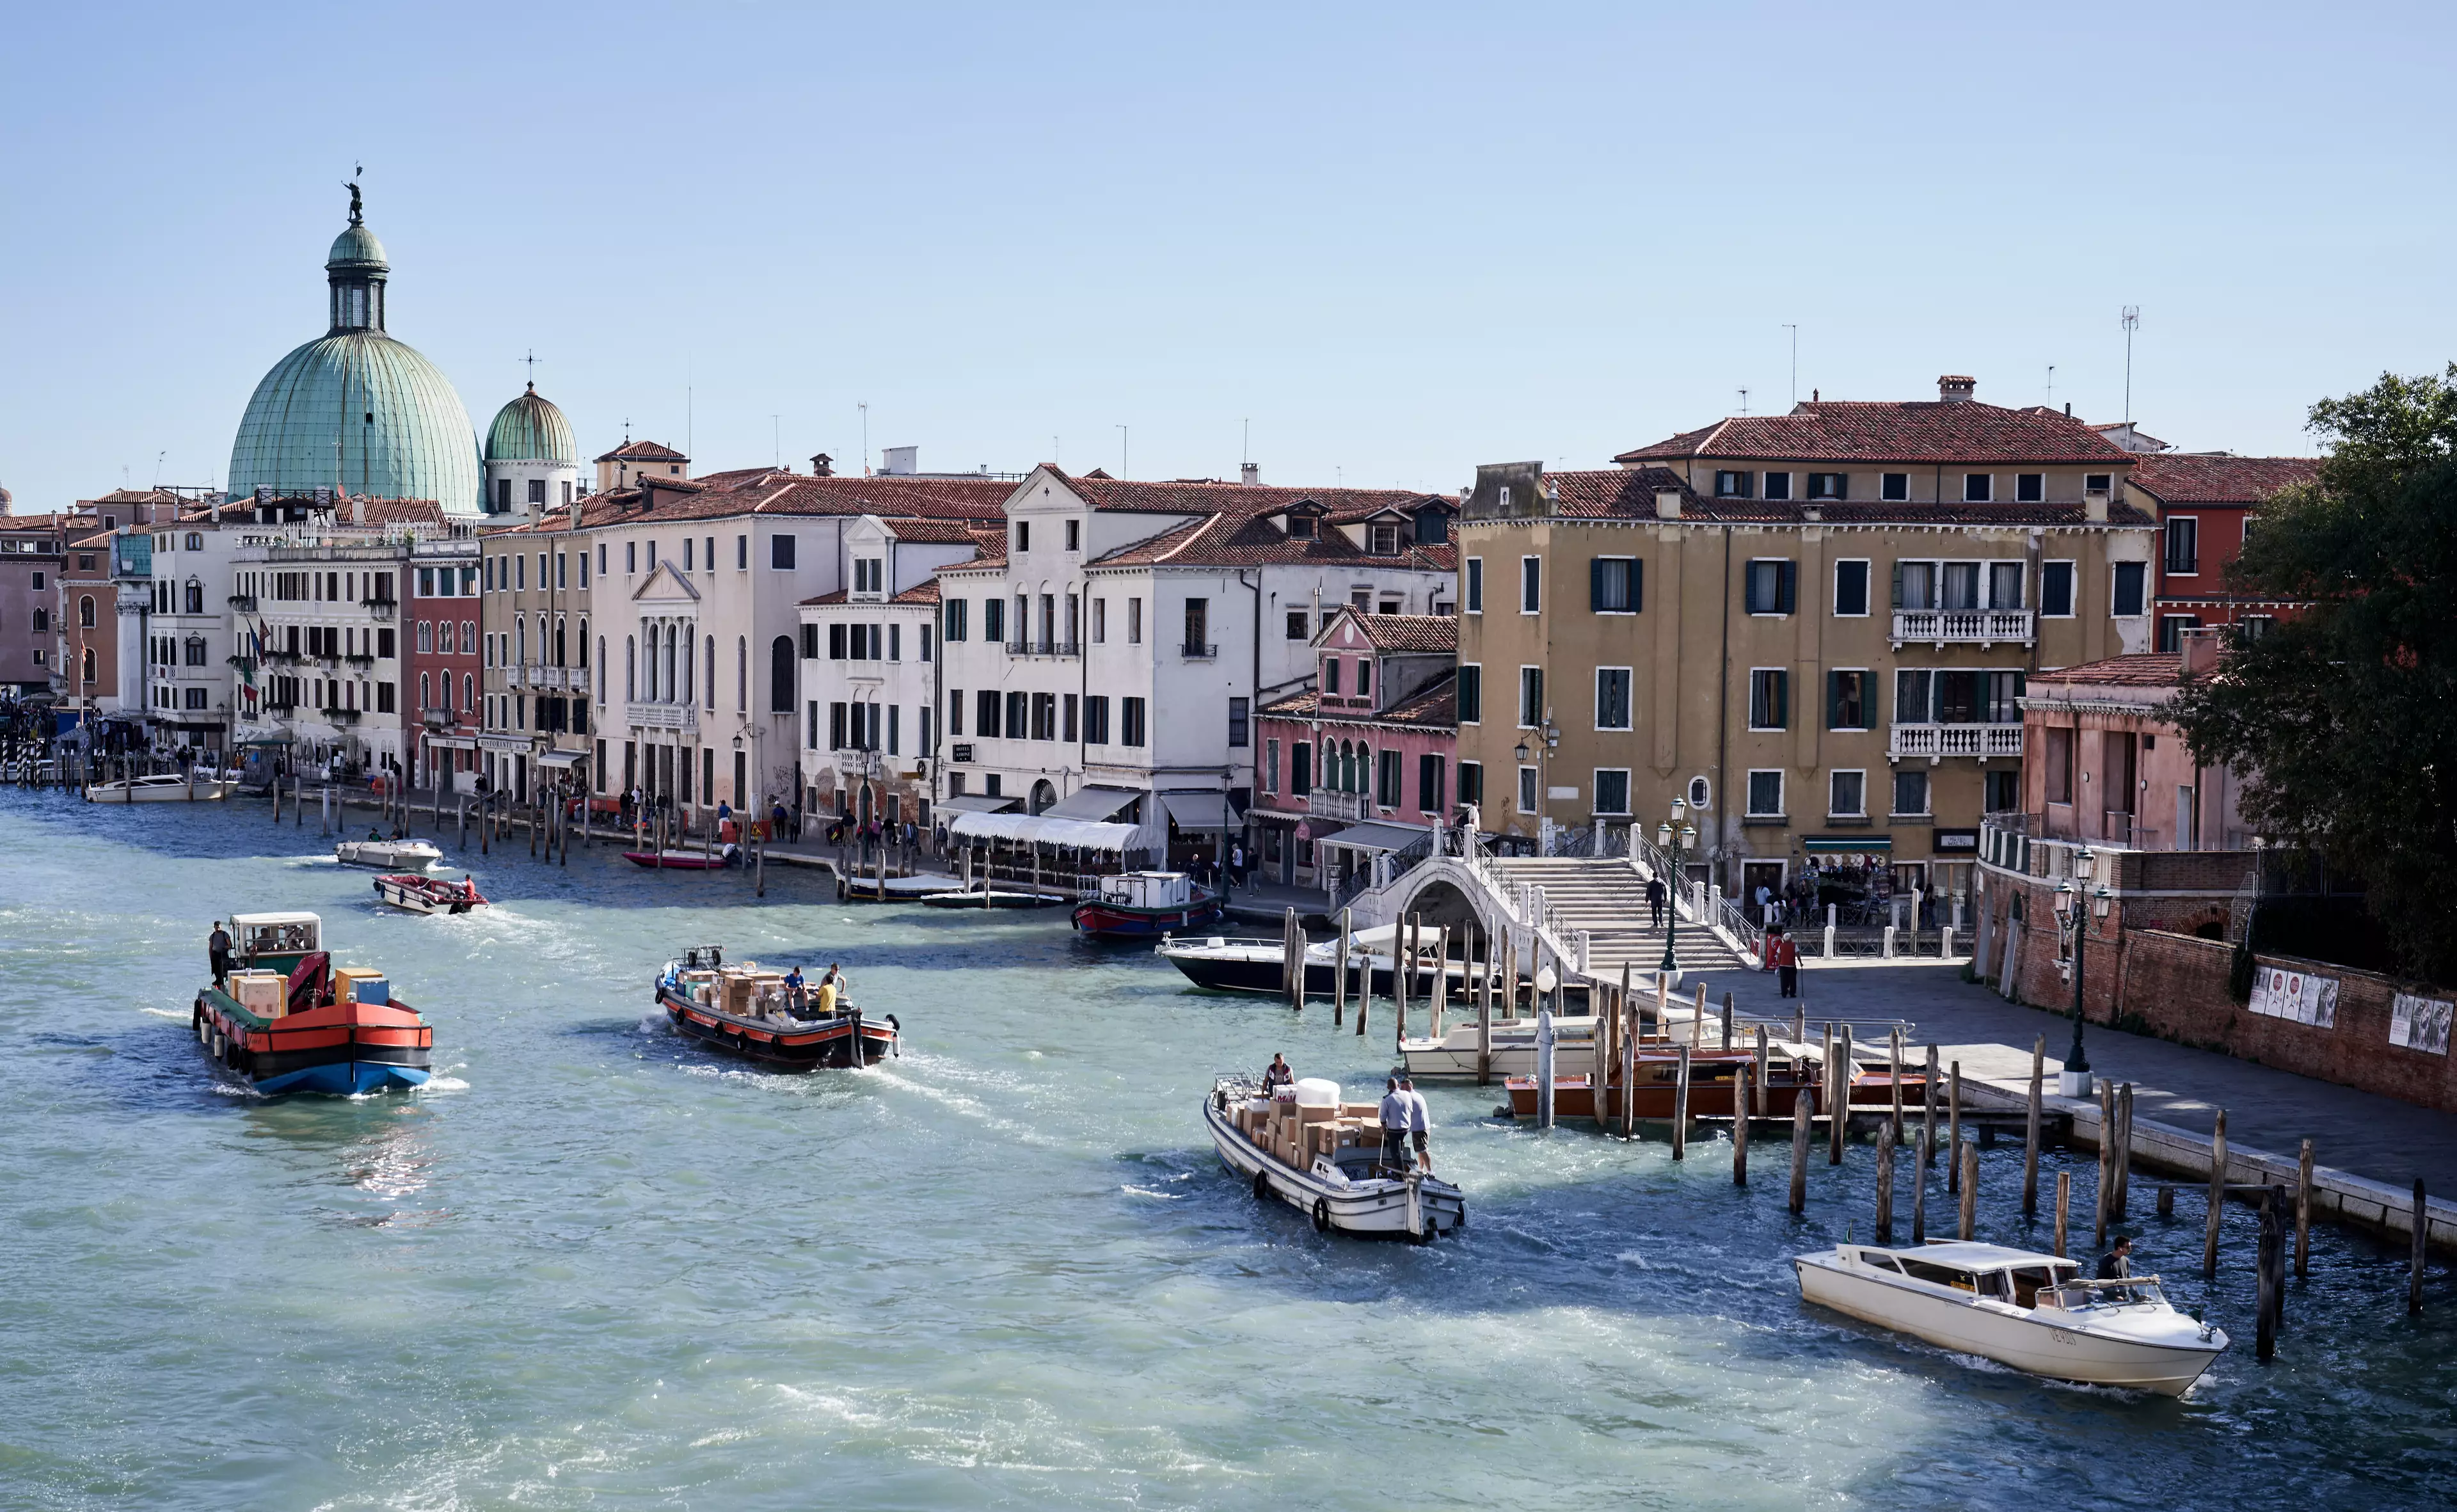 Venice in 2019.